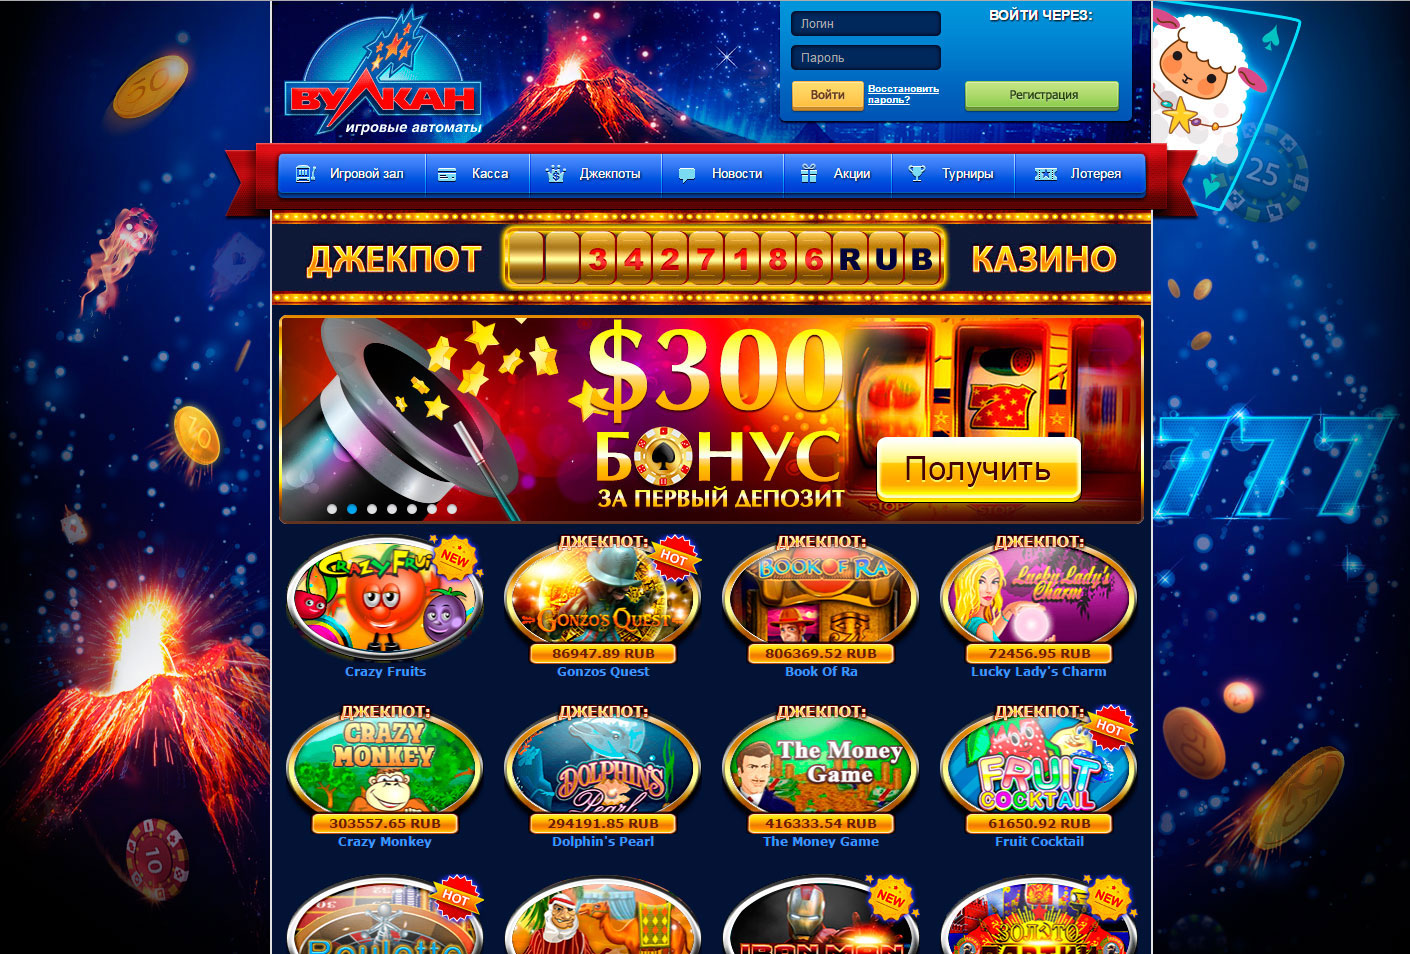 Играть бесплатно онлайн казино вулкан casino vulcan info как зарегистрироваться на официальном сайте 1win